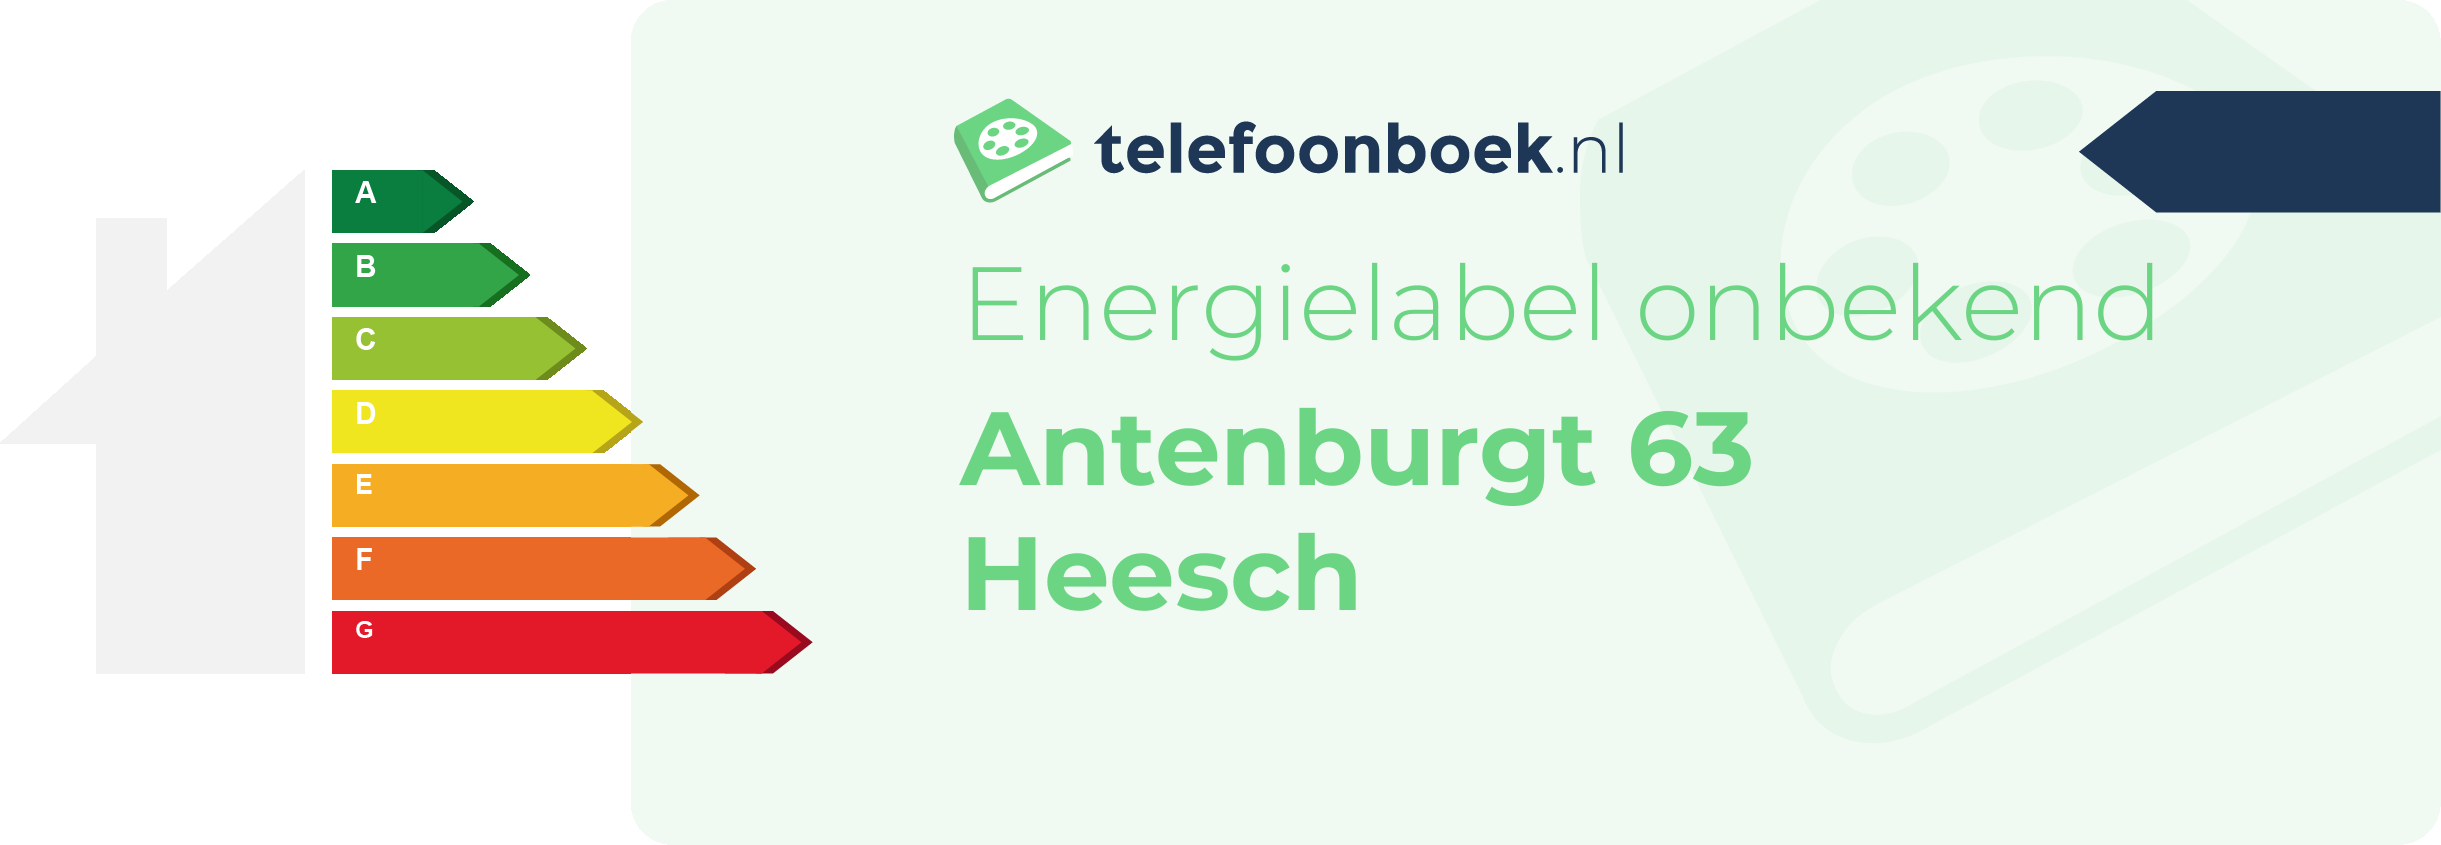 Energielabel Antenburgt 63 Heesch